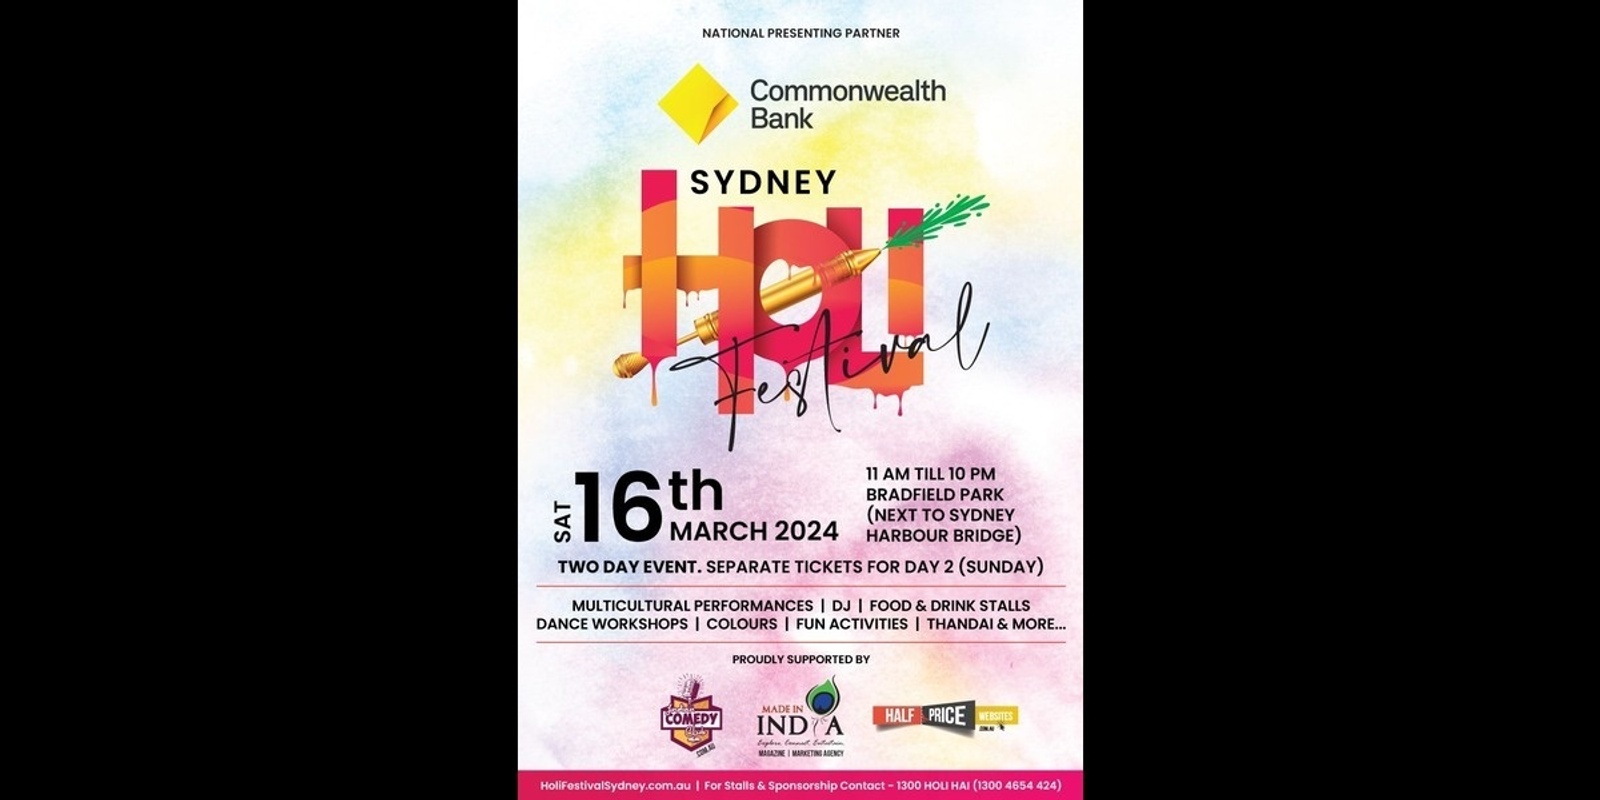 Holi Festival Sydney 16th March 2024 Humanitix